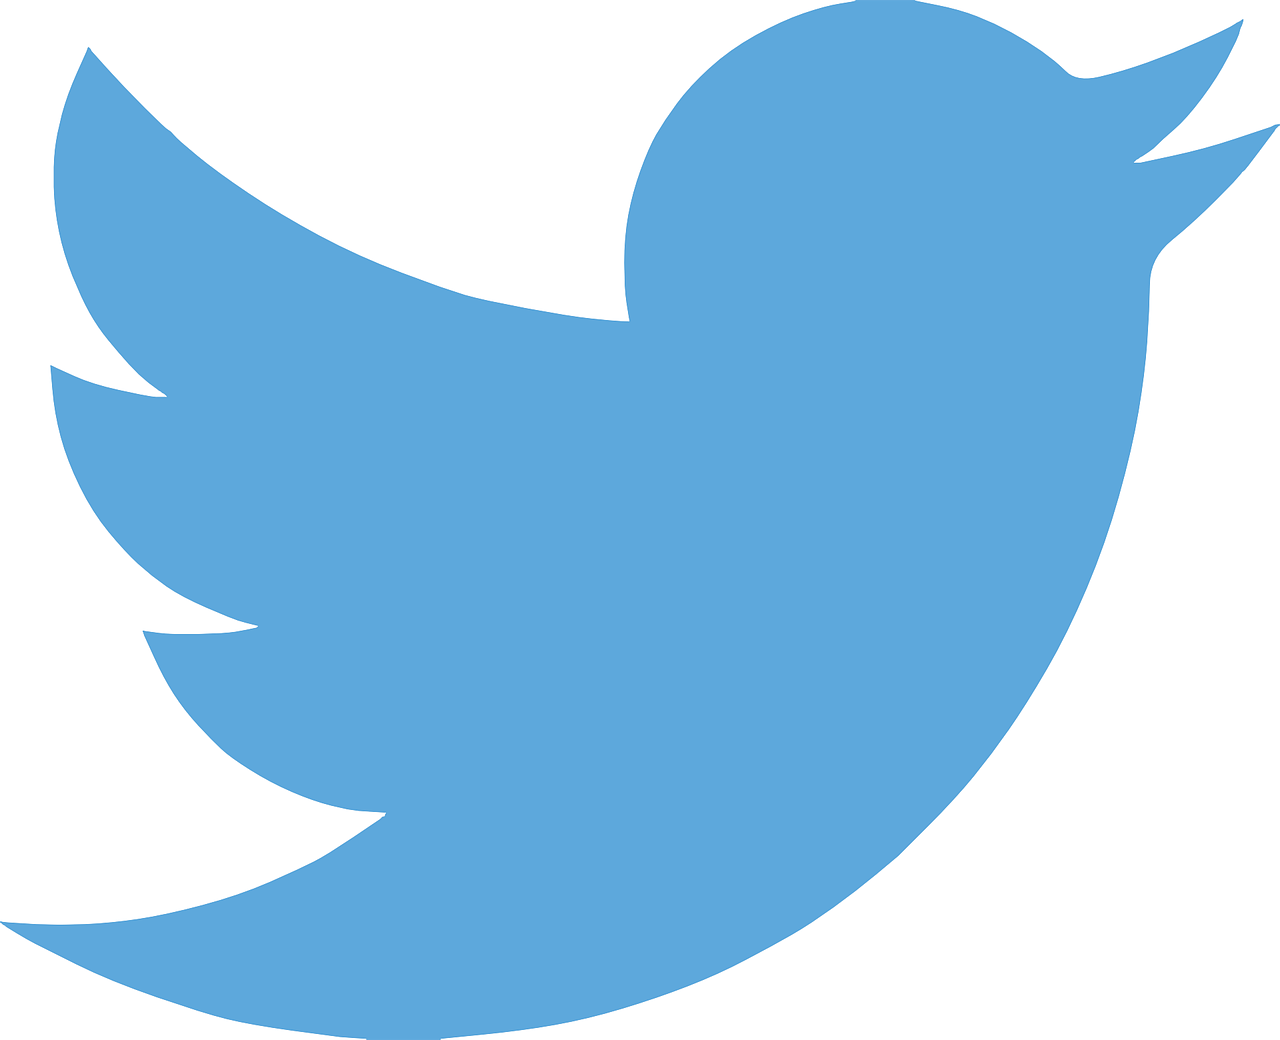 Três pessoas nos EUA foram acusadas de hackear o Twitter